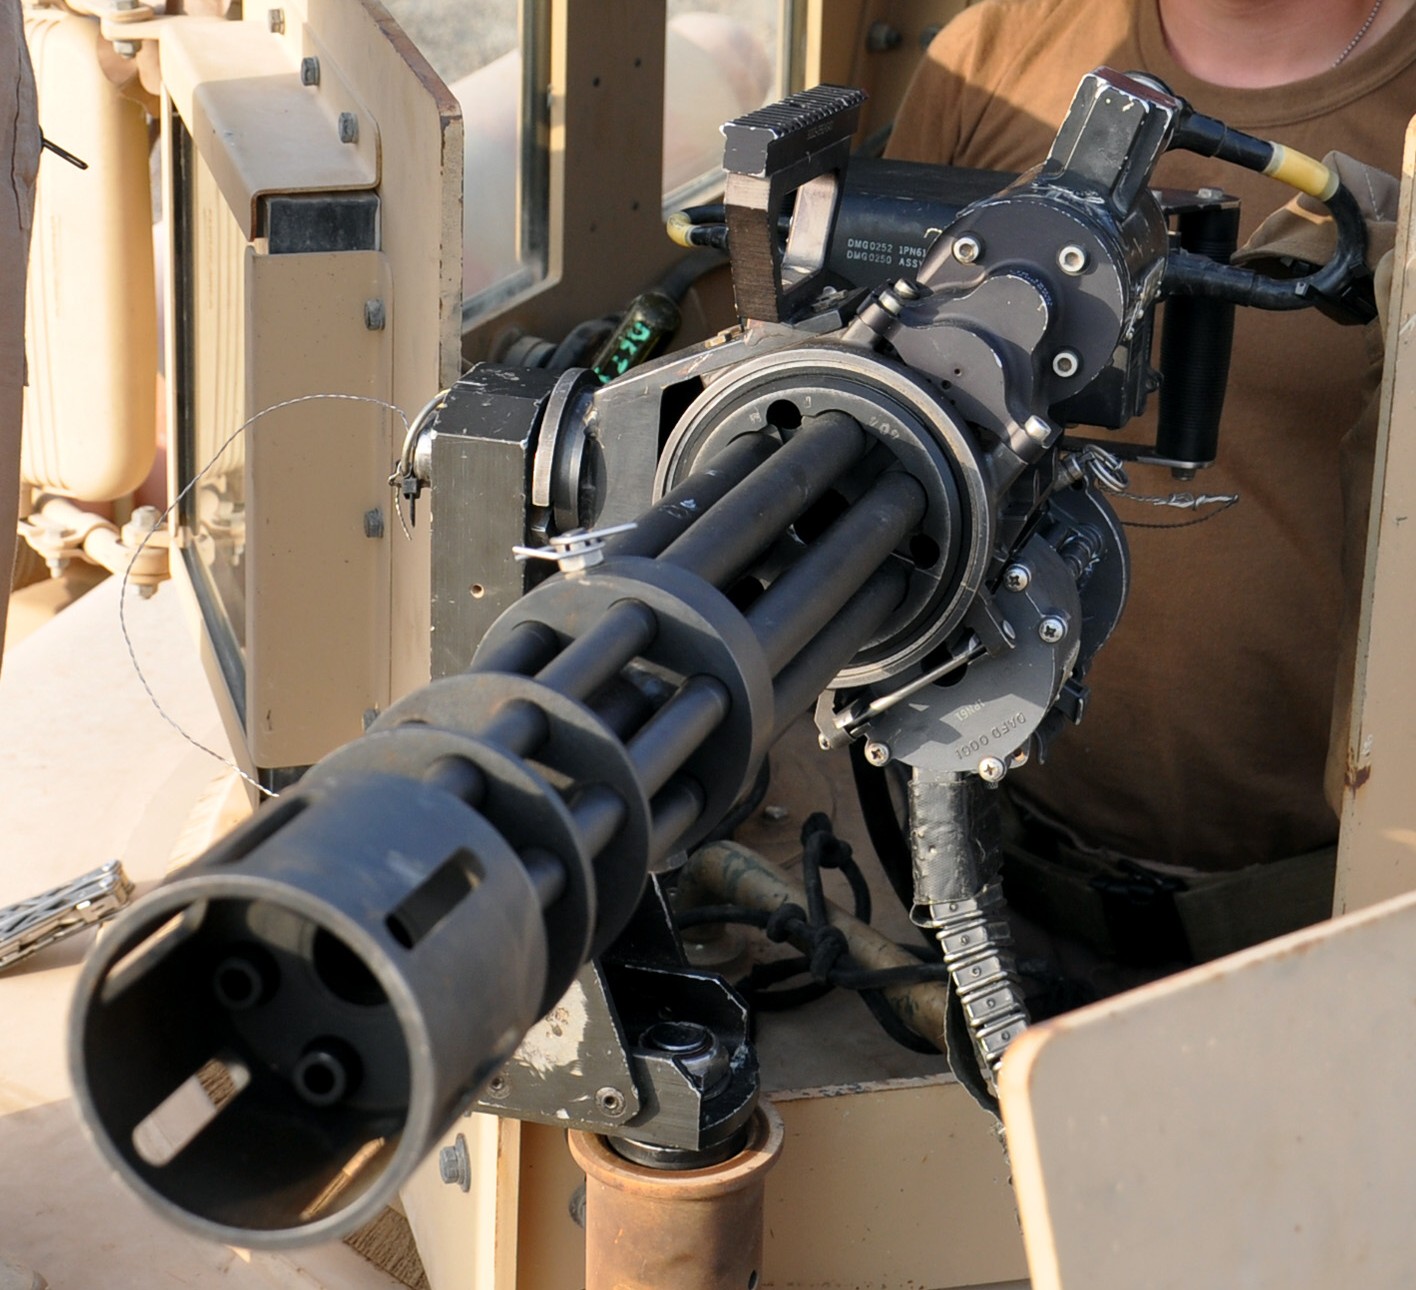 m134 rotary machine gun system six barreled minigun gatling 7,62mm gau-17 19